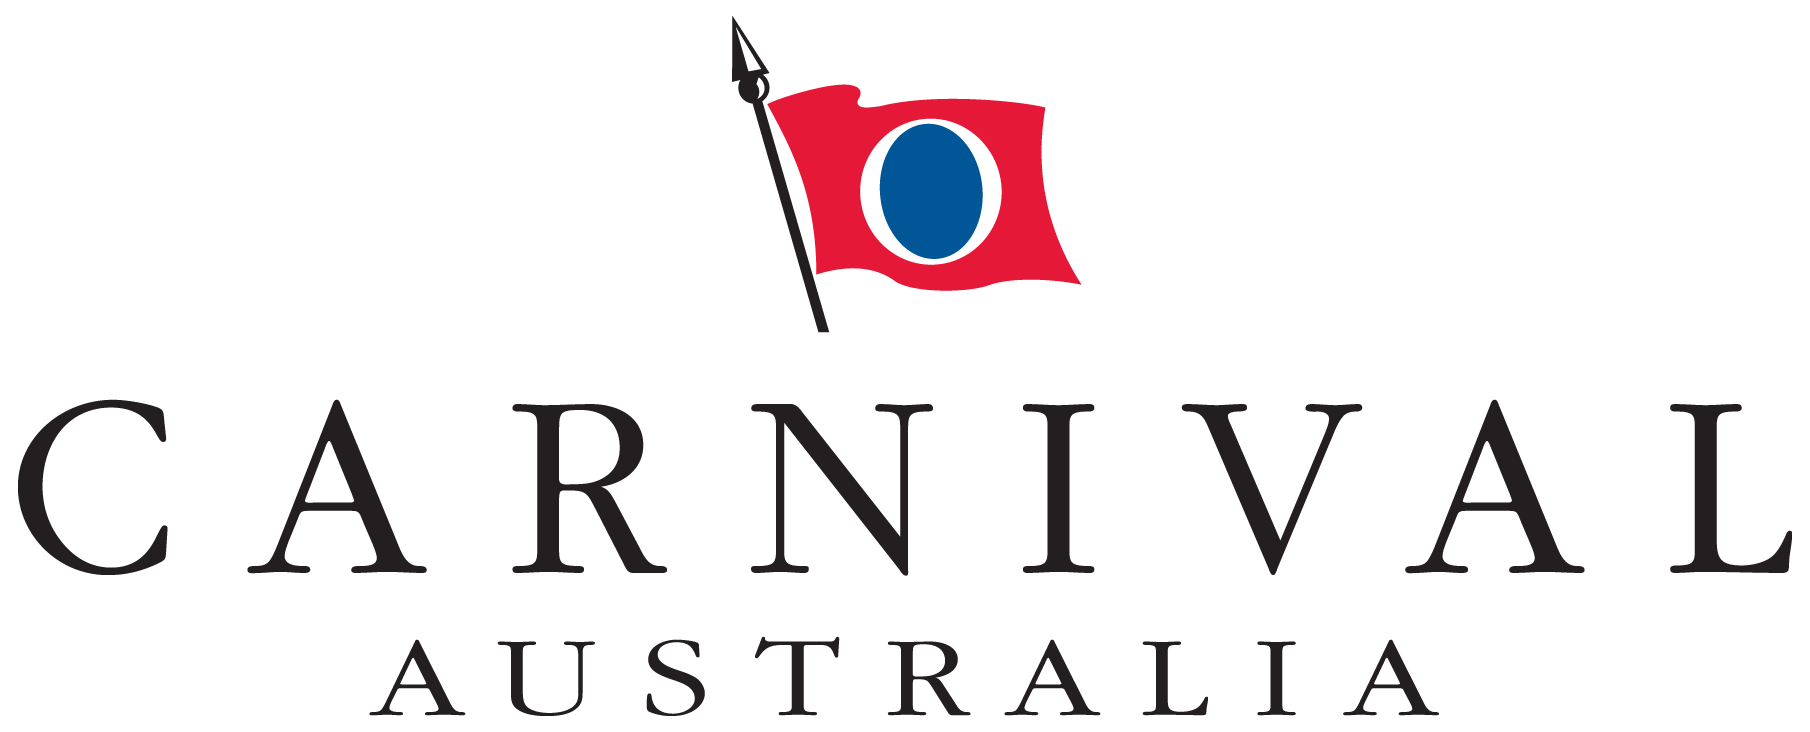 carnival-australia-logo copy.png